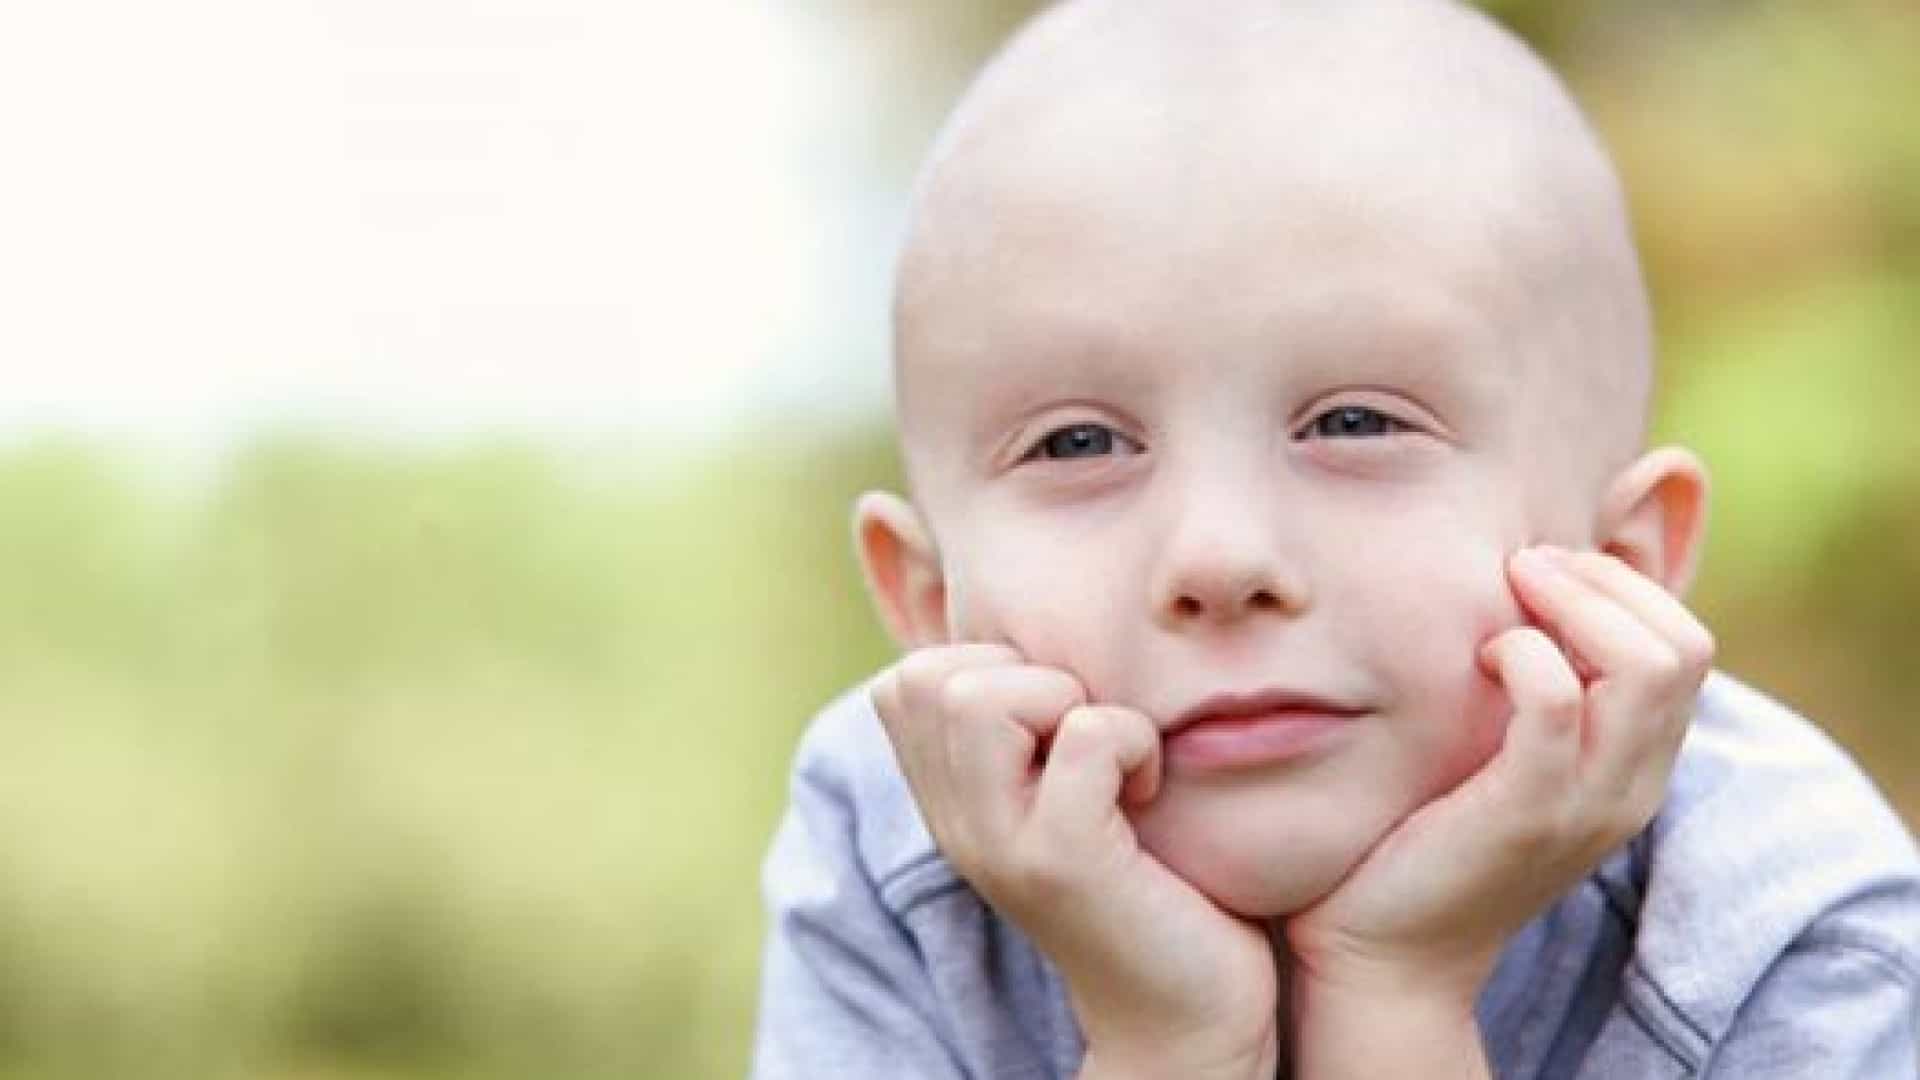 Câncer infantil: diagnóstico precoce pode resultar na cura de até 80%